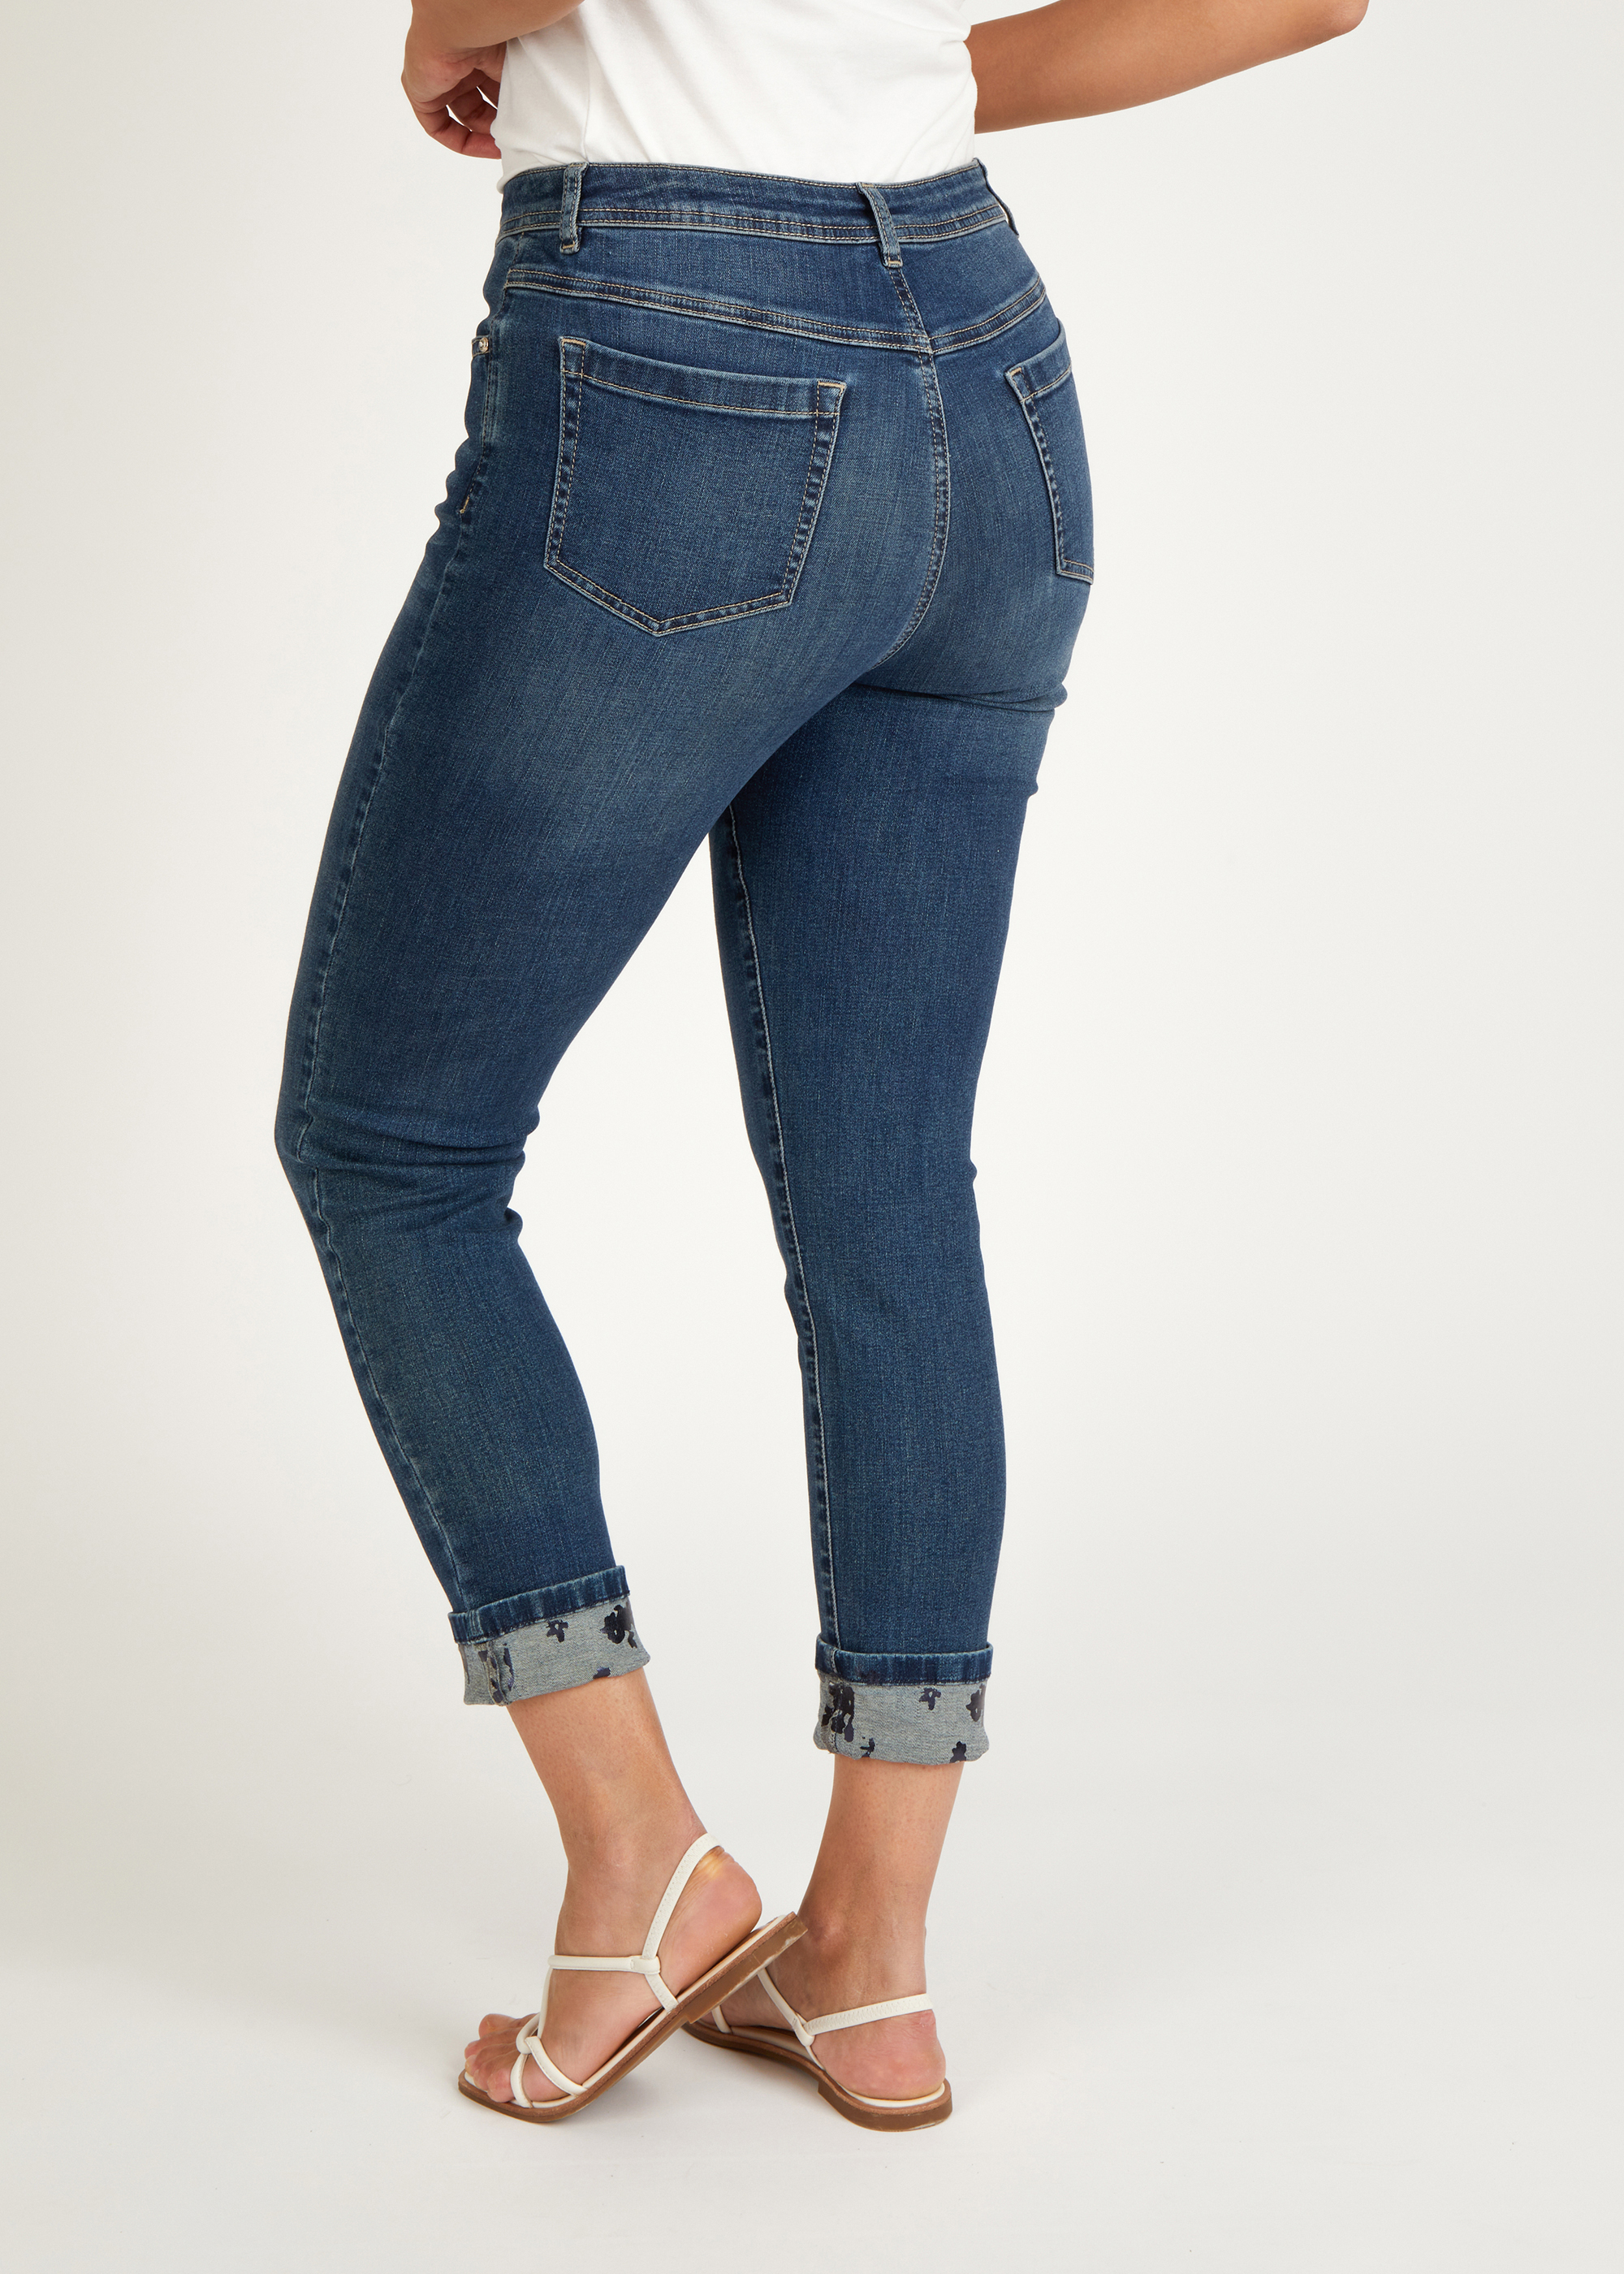 Jeans in Cotton-Qualität mit floralem Print